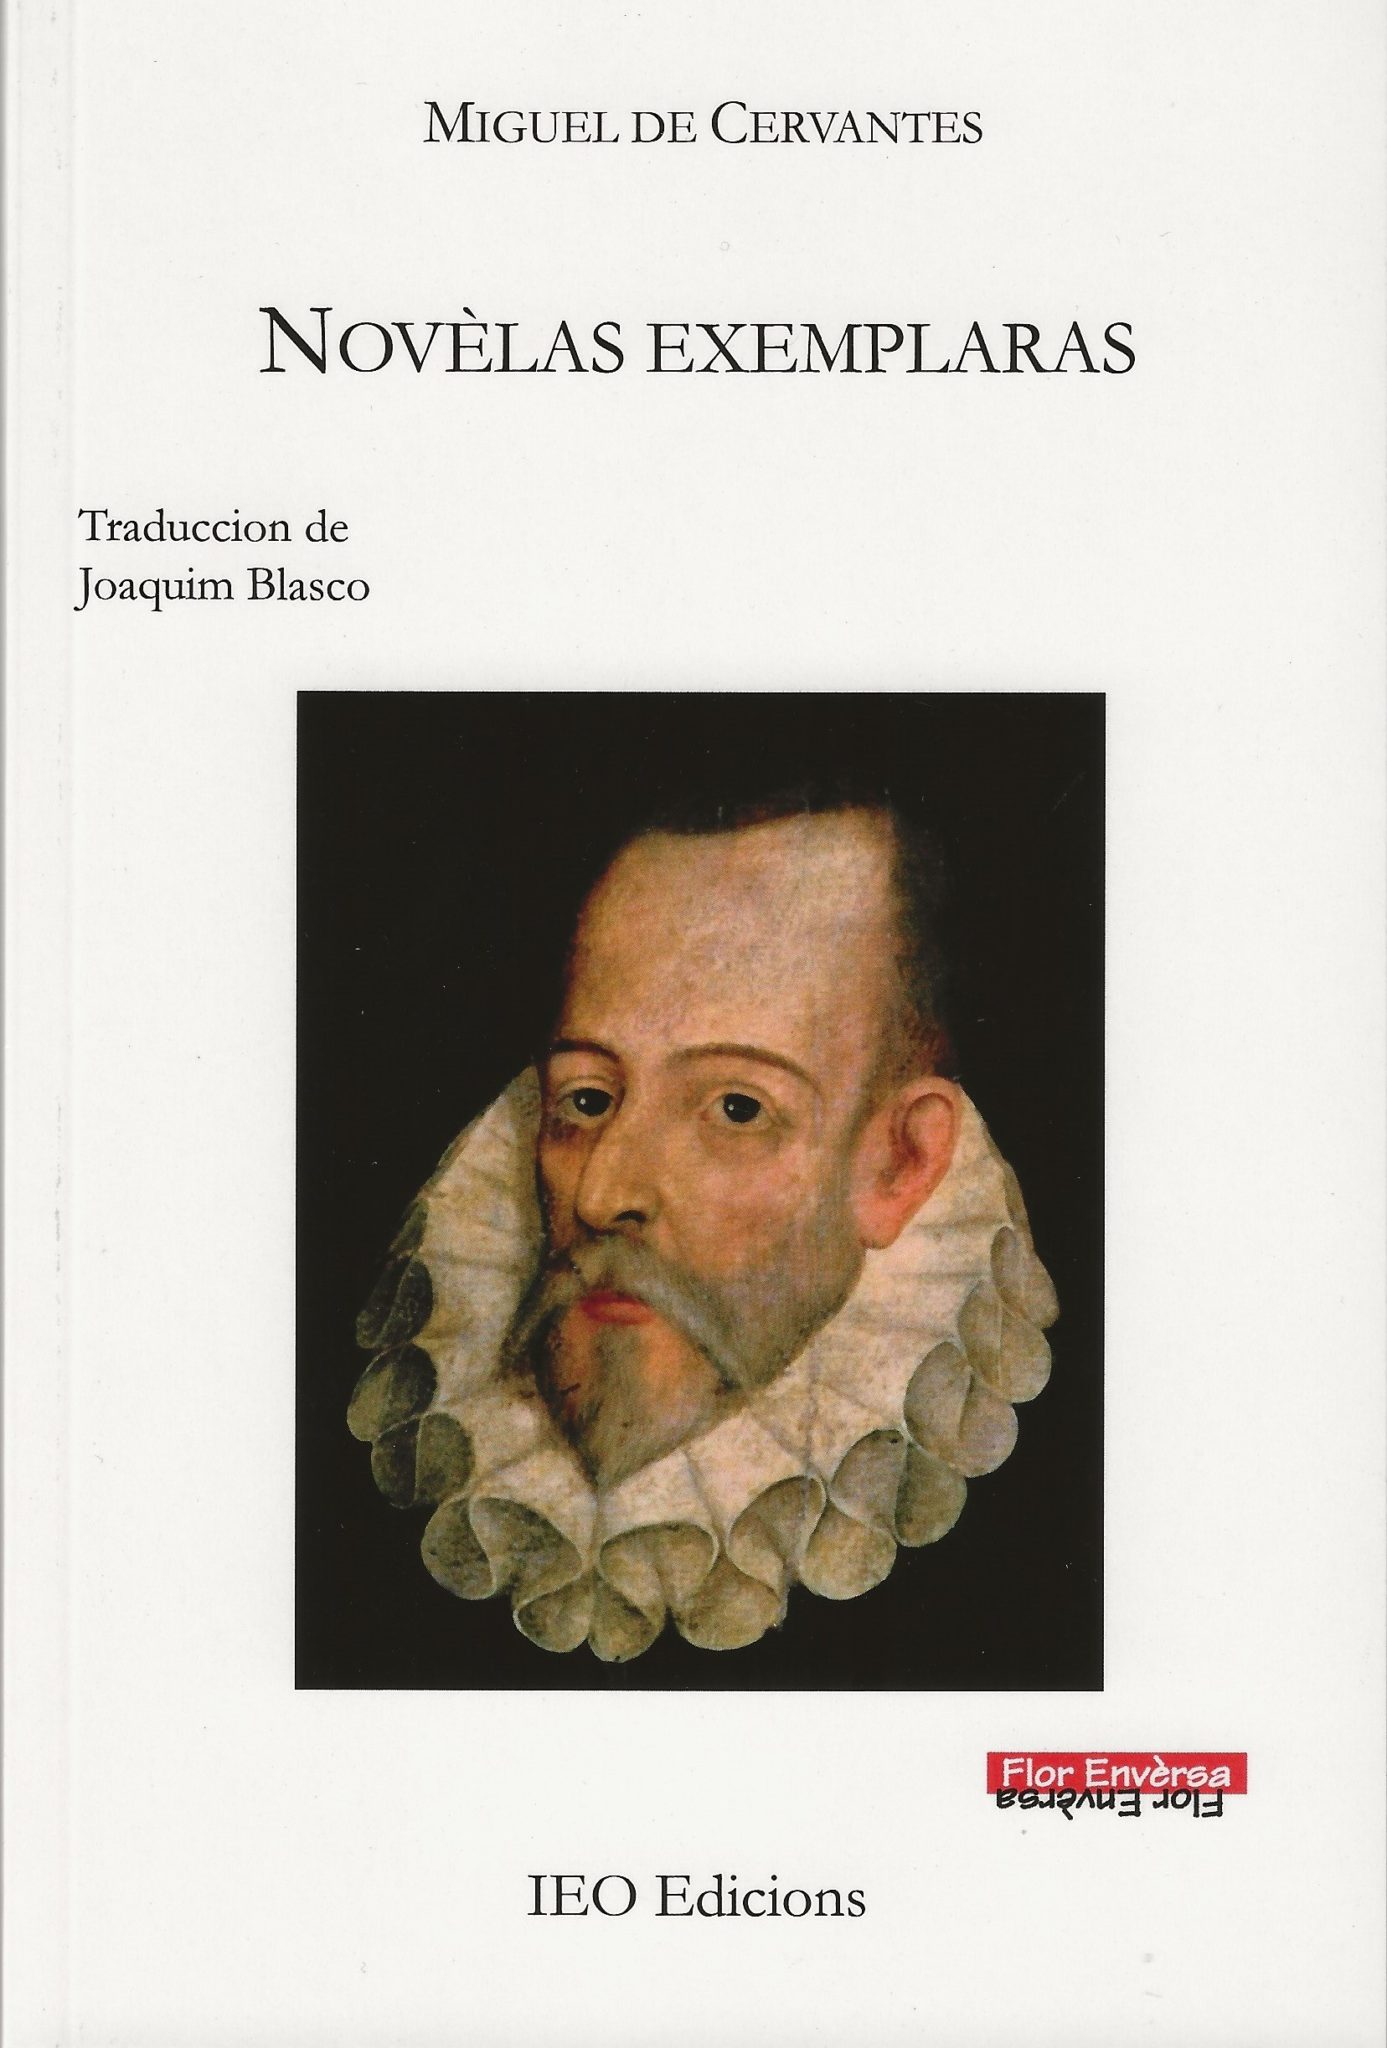 Retraches de traductors – Joaquim Blasco